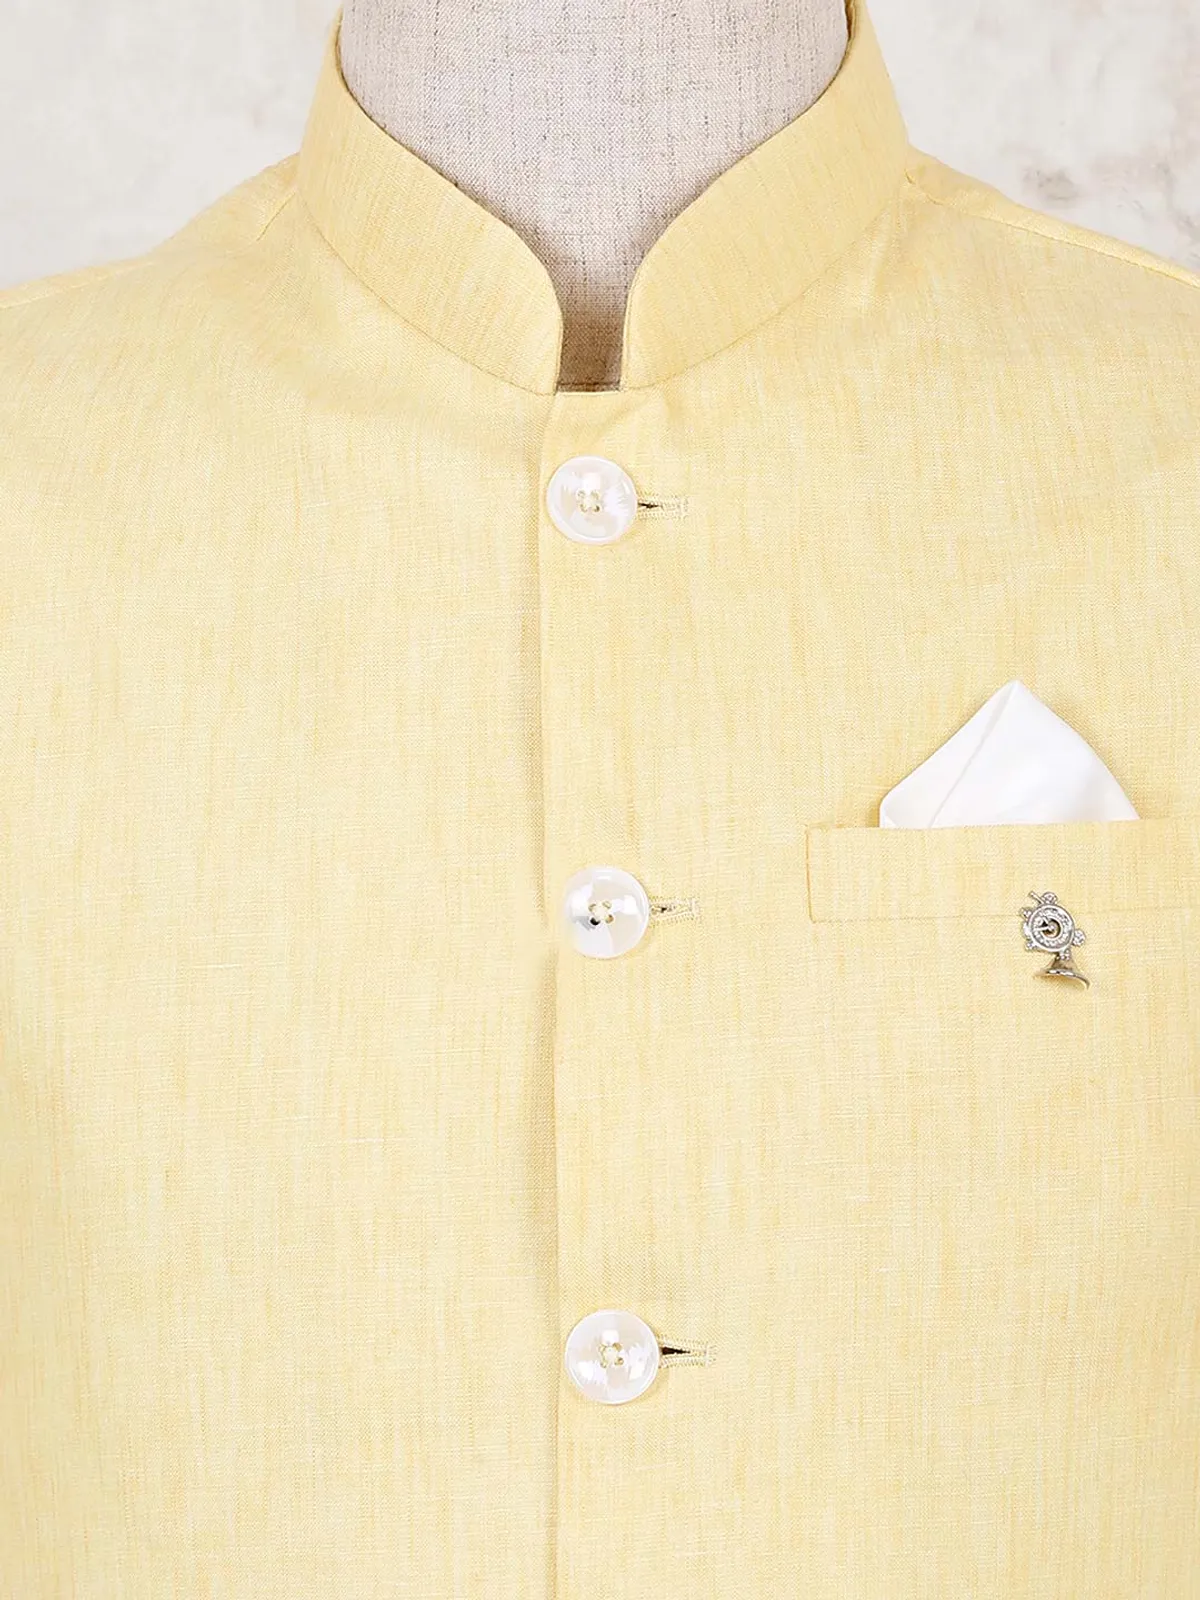 Yellow solid cotton linen sleeveless waistcoat